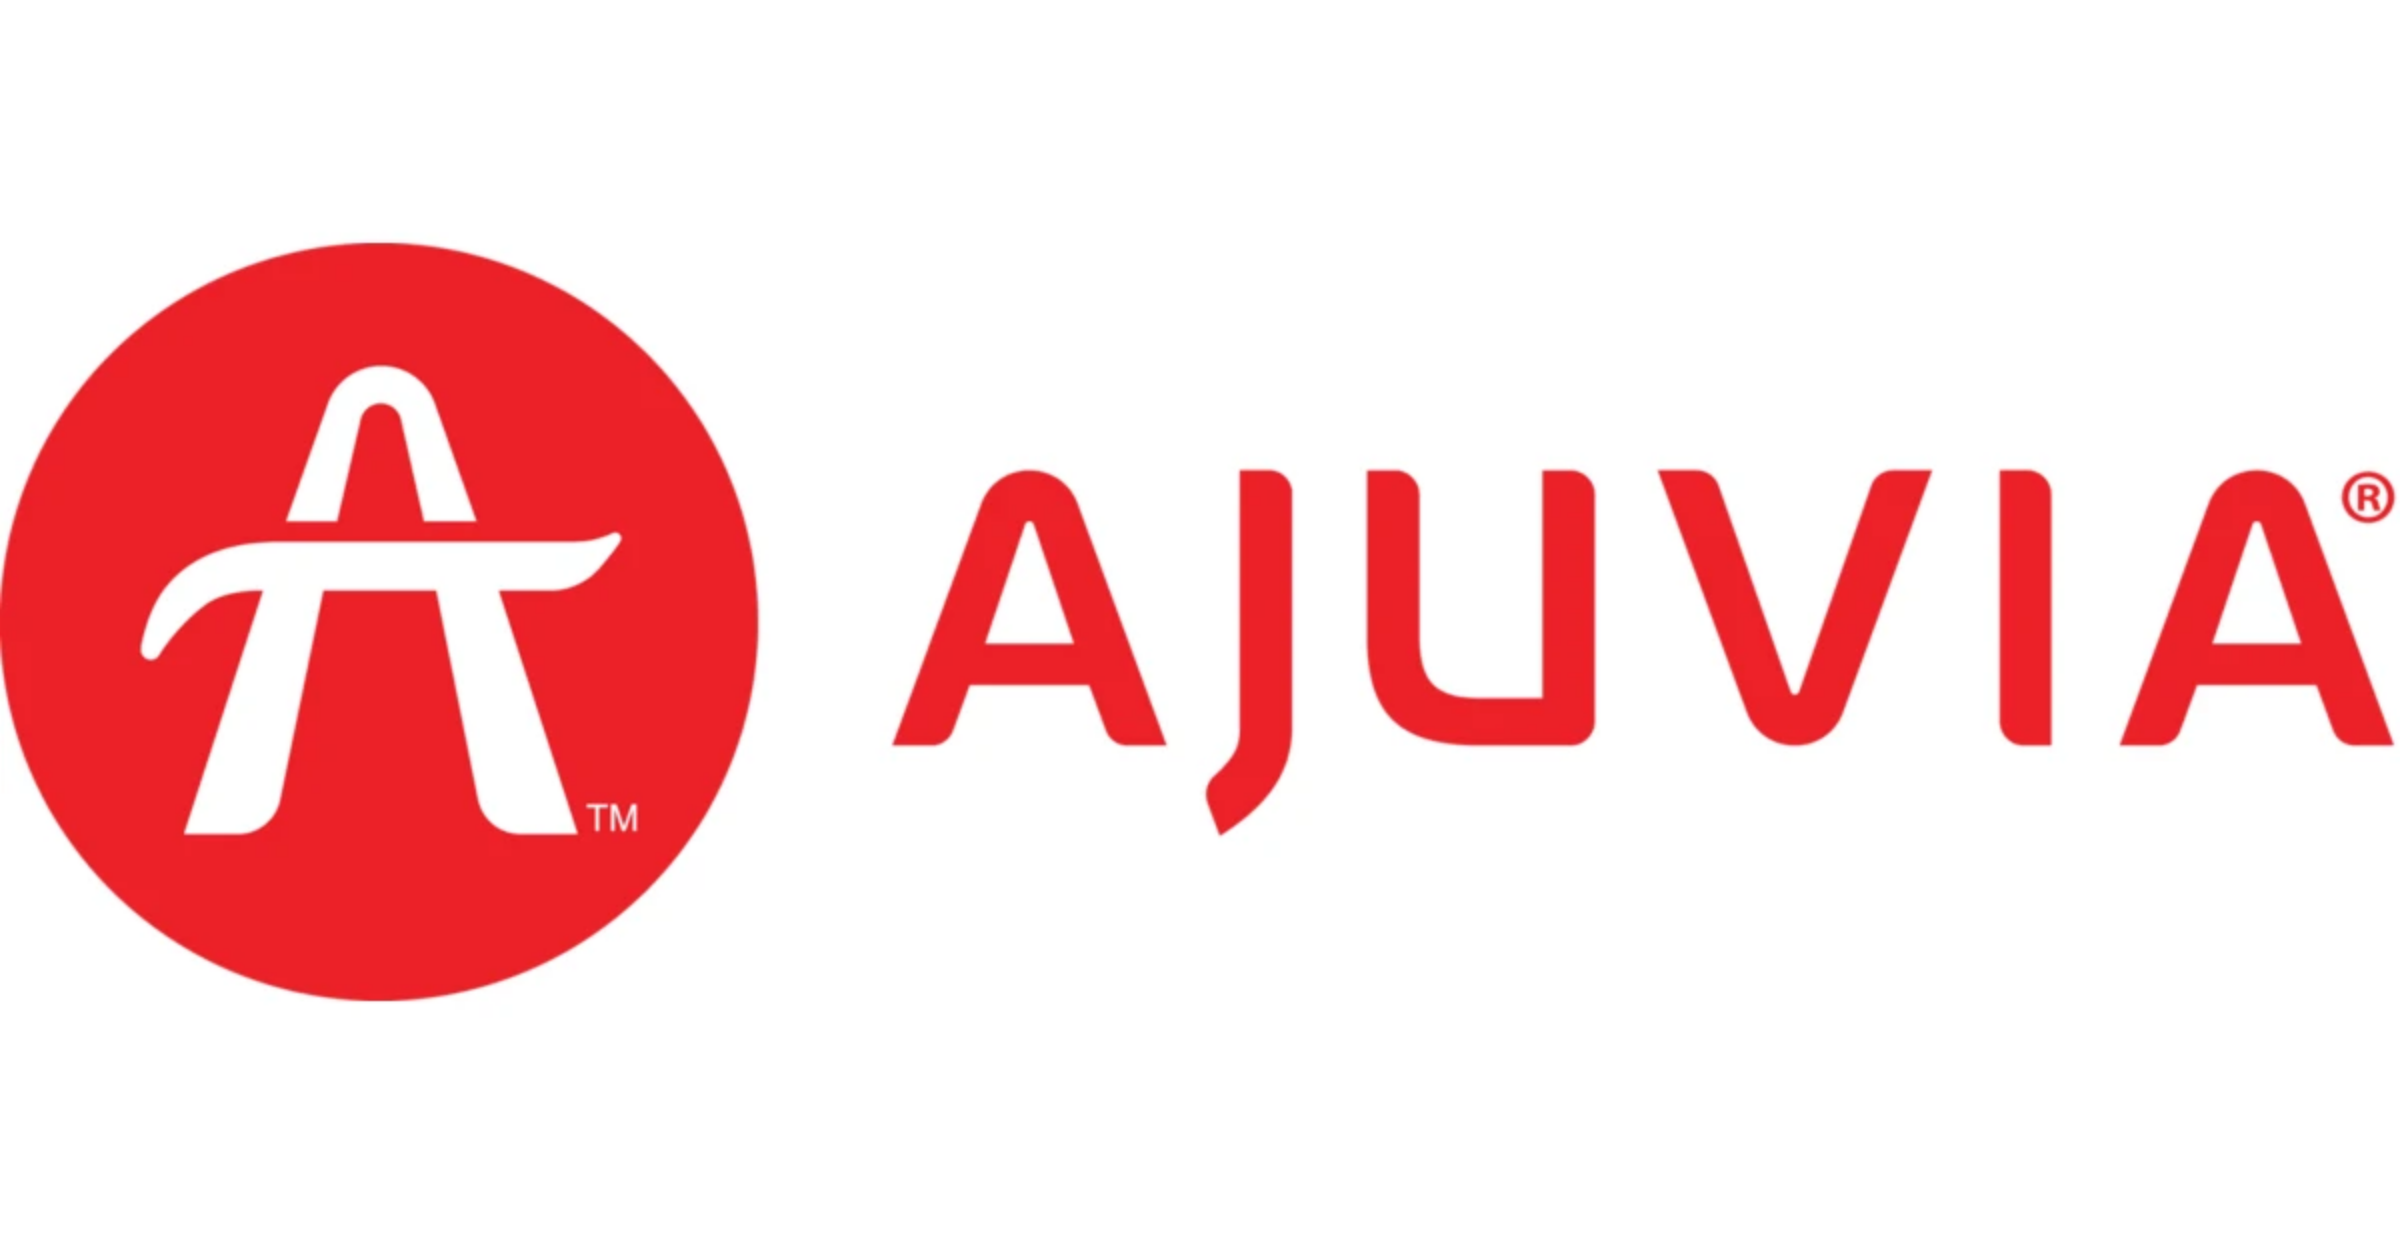 The Ajuvia medical device company logo